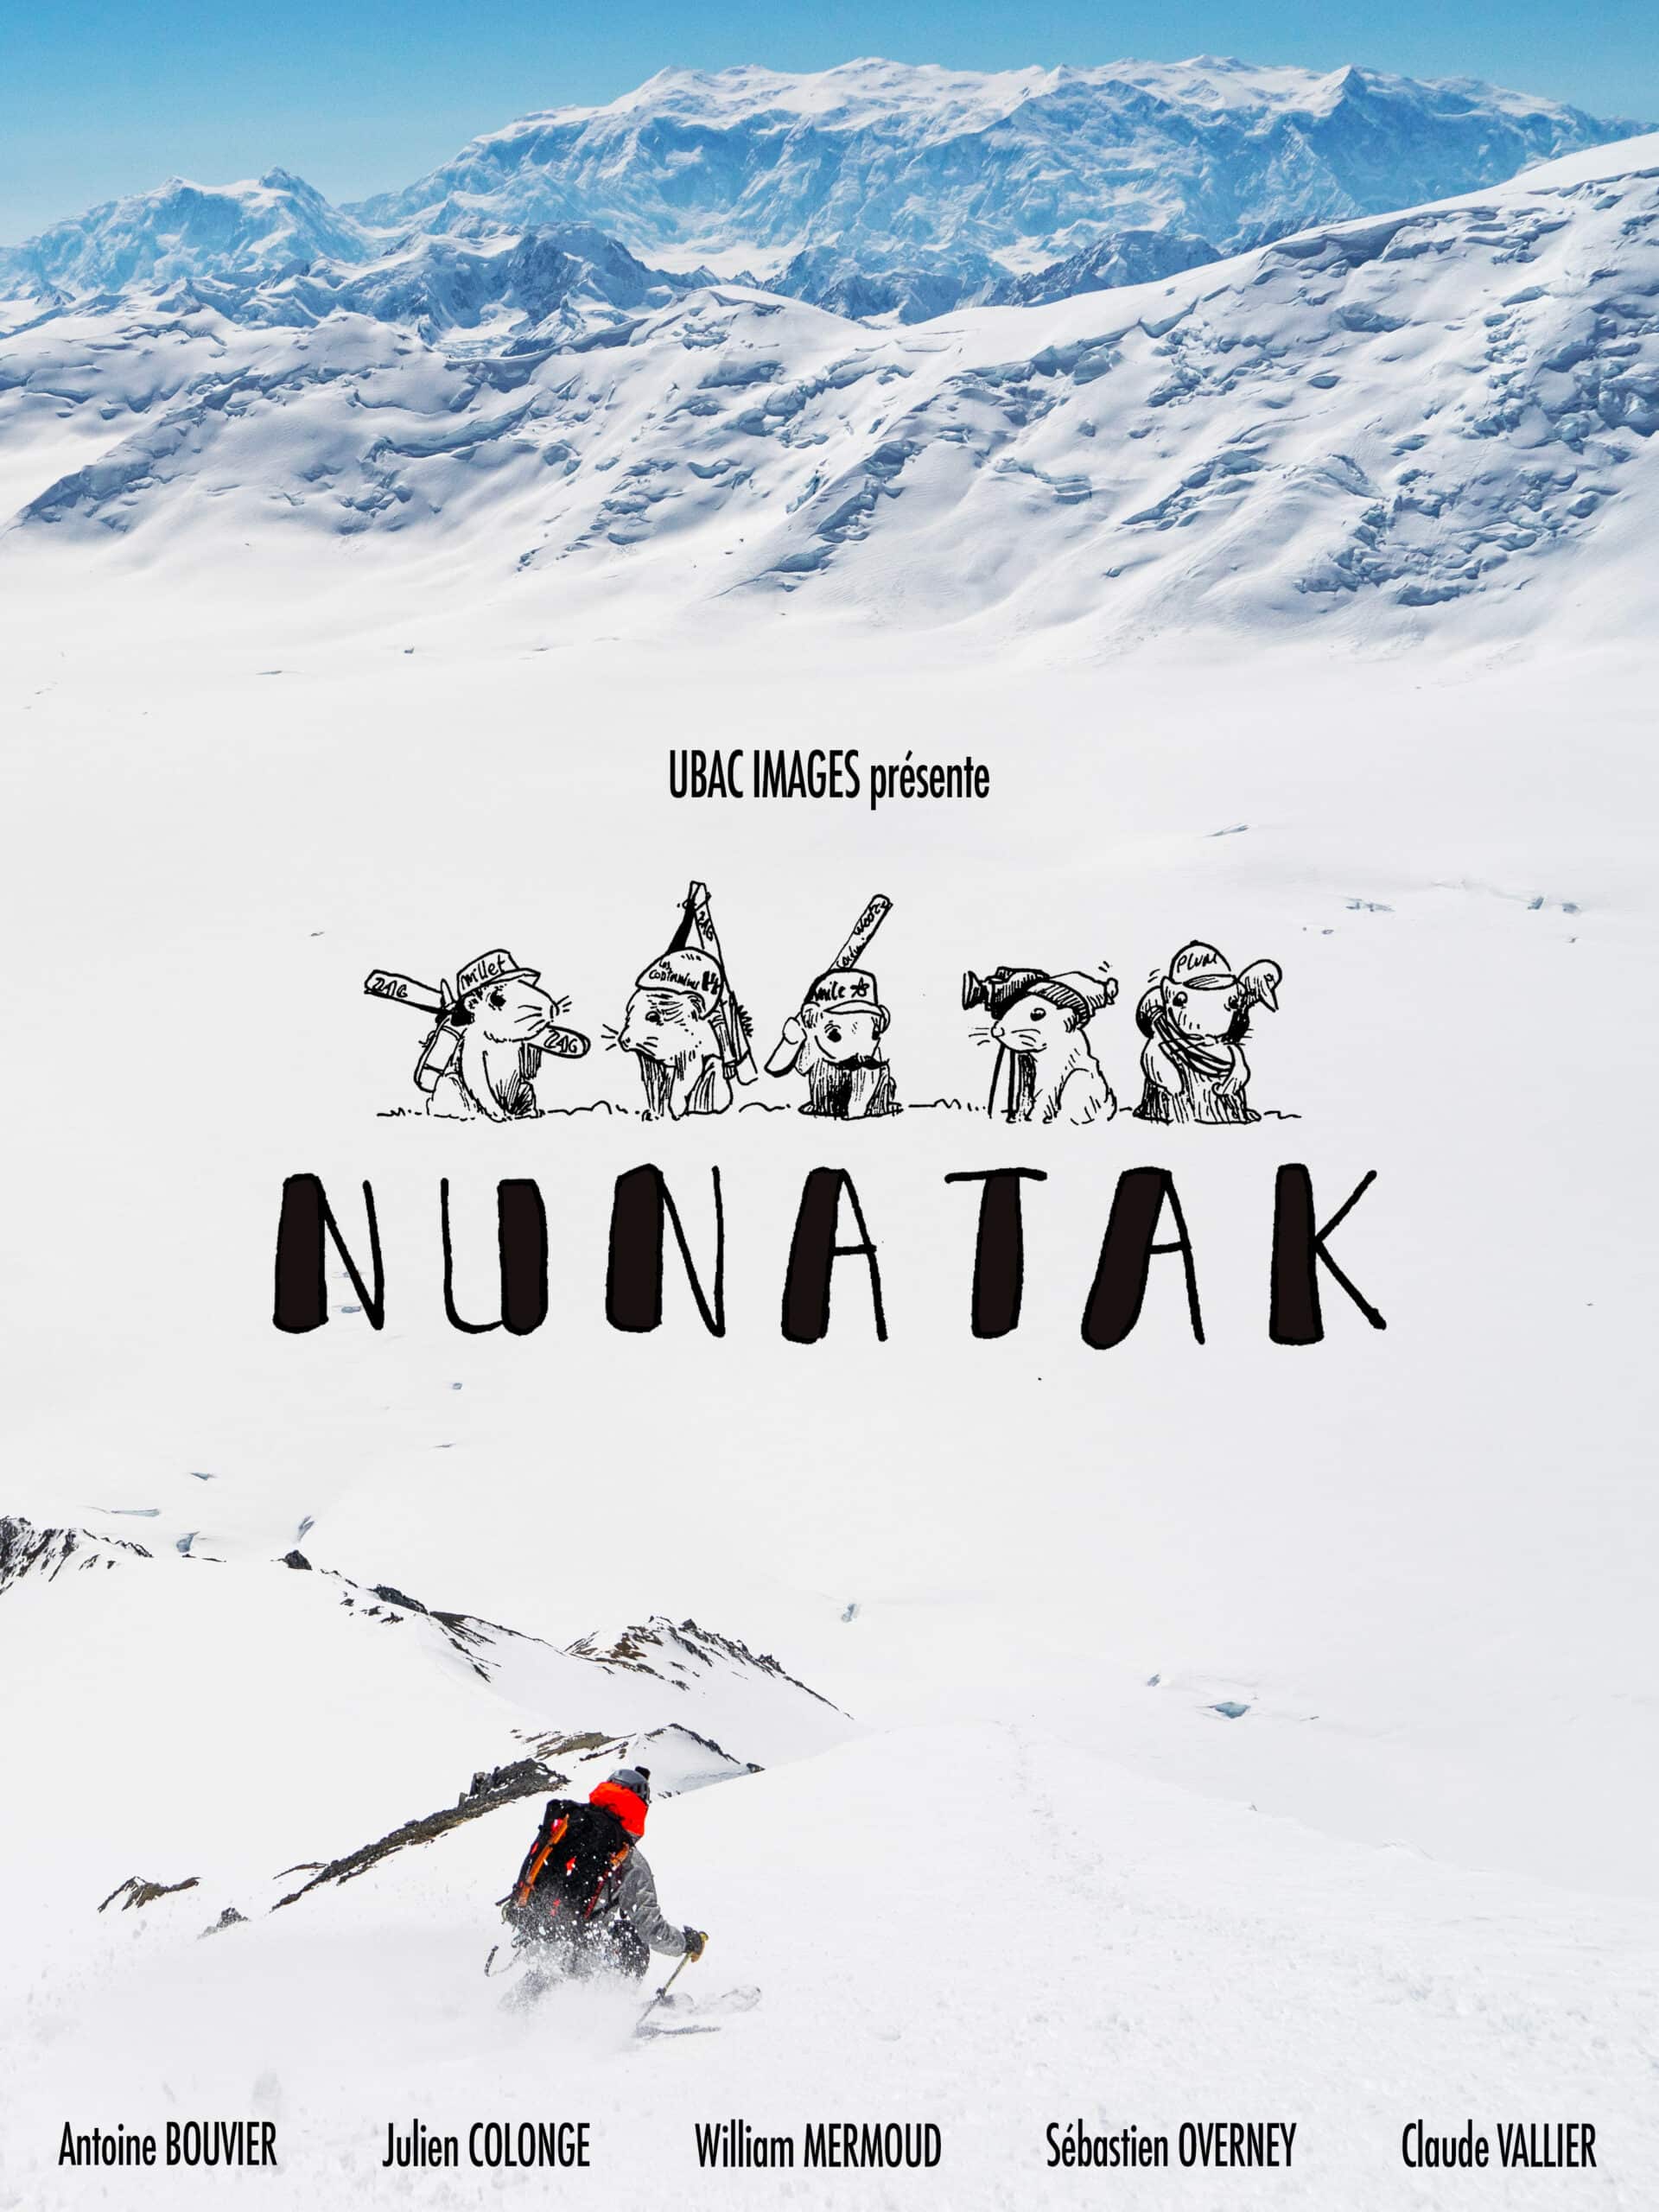 Nunatak the movie skiing in the Saint Elias Mountains